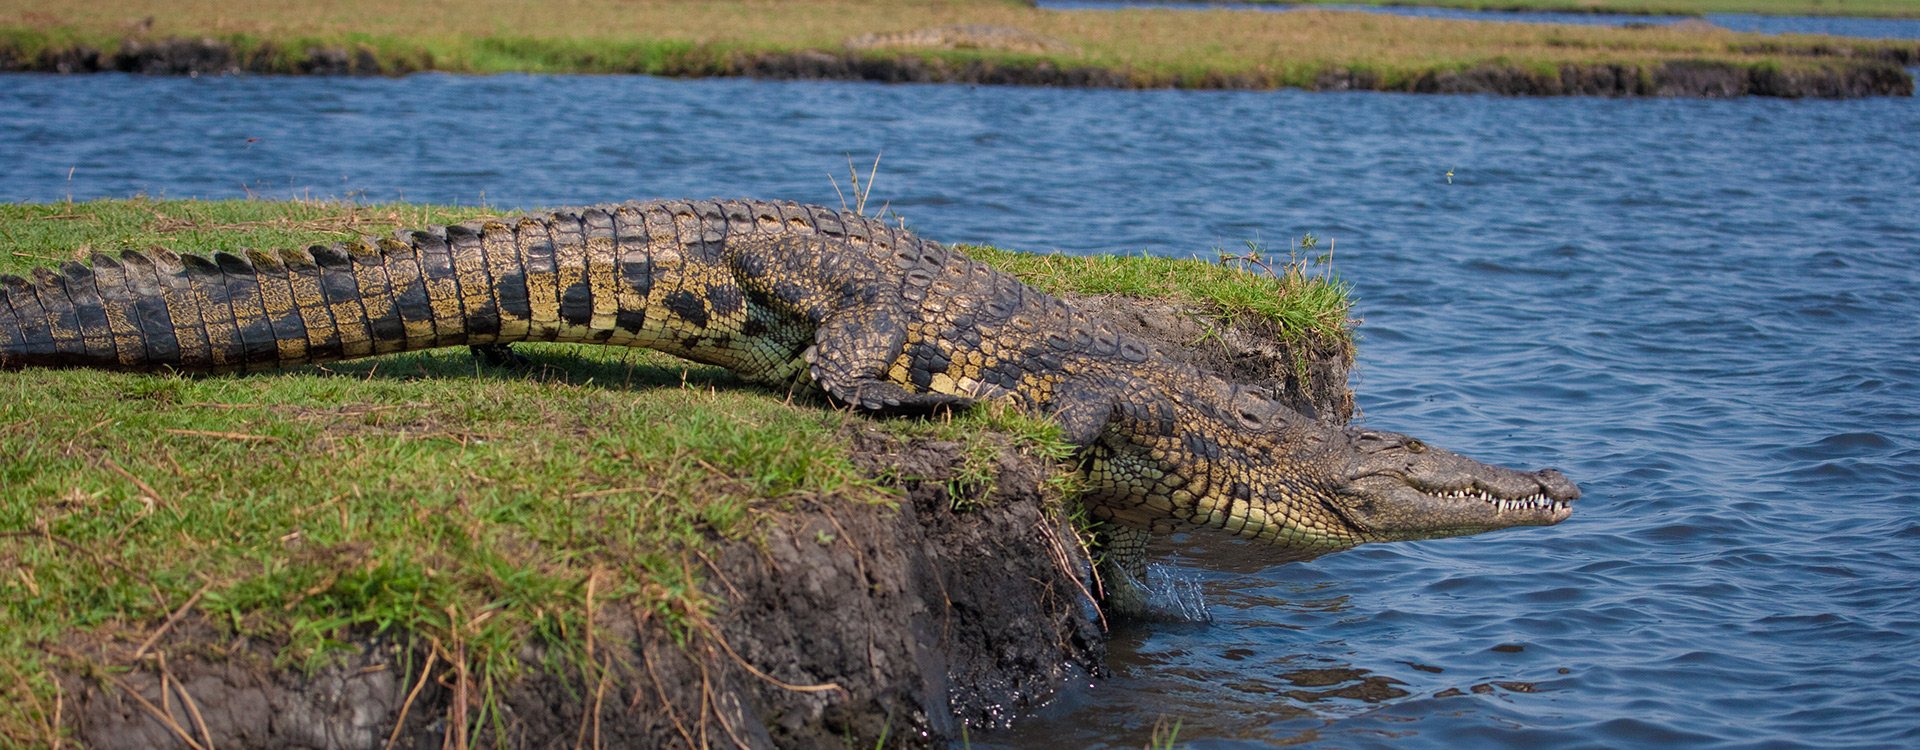 Chobe National Park_Crocodile